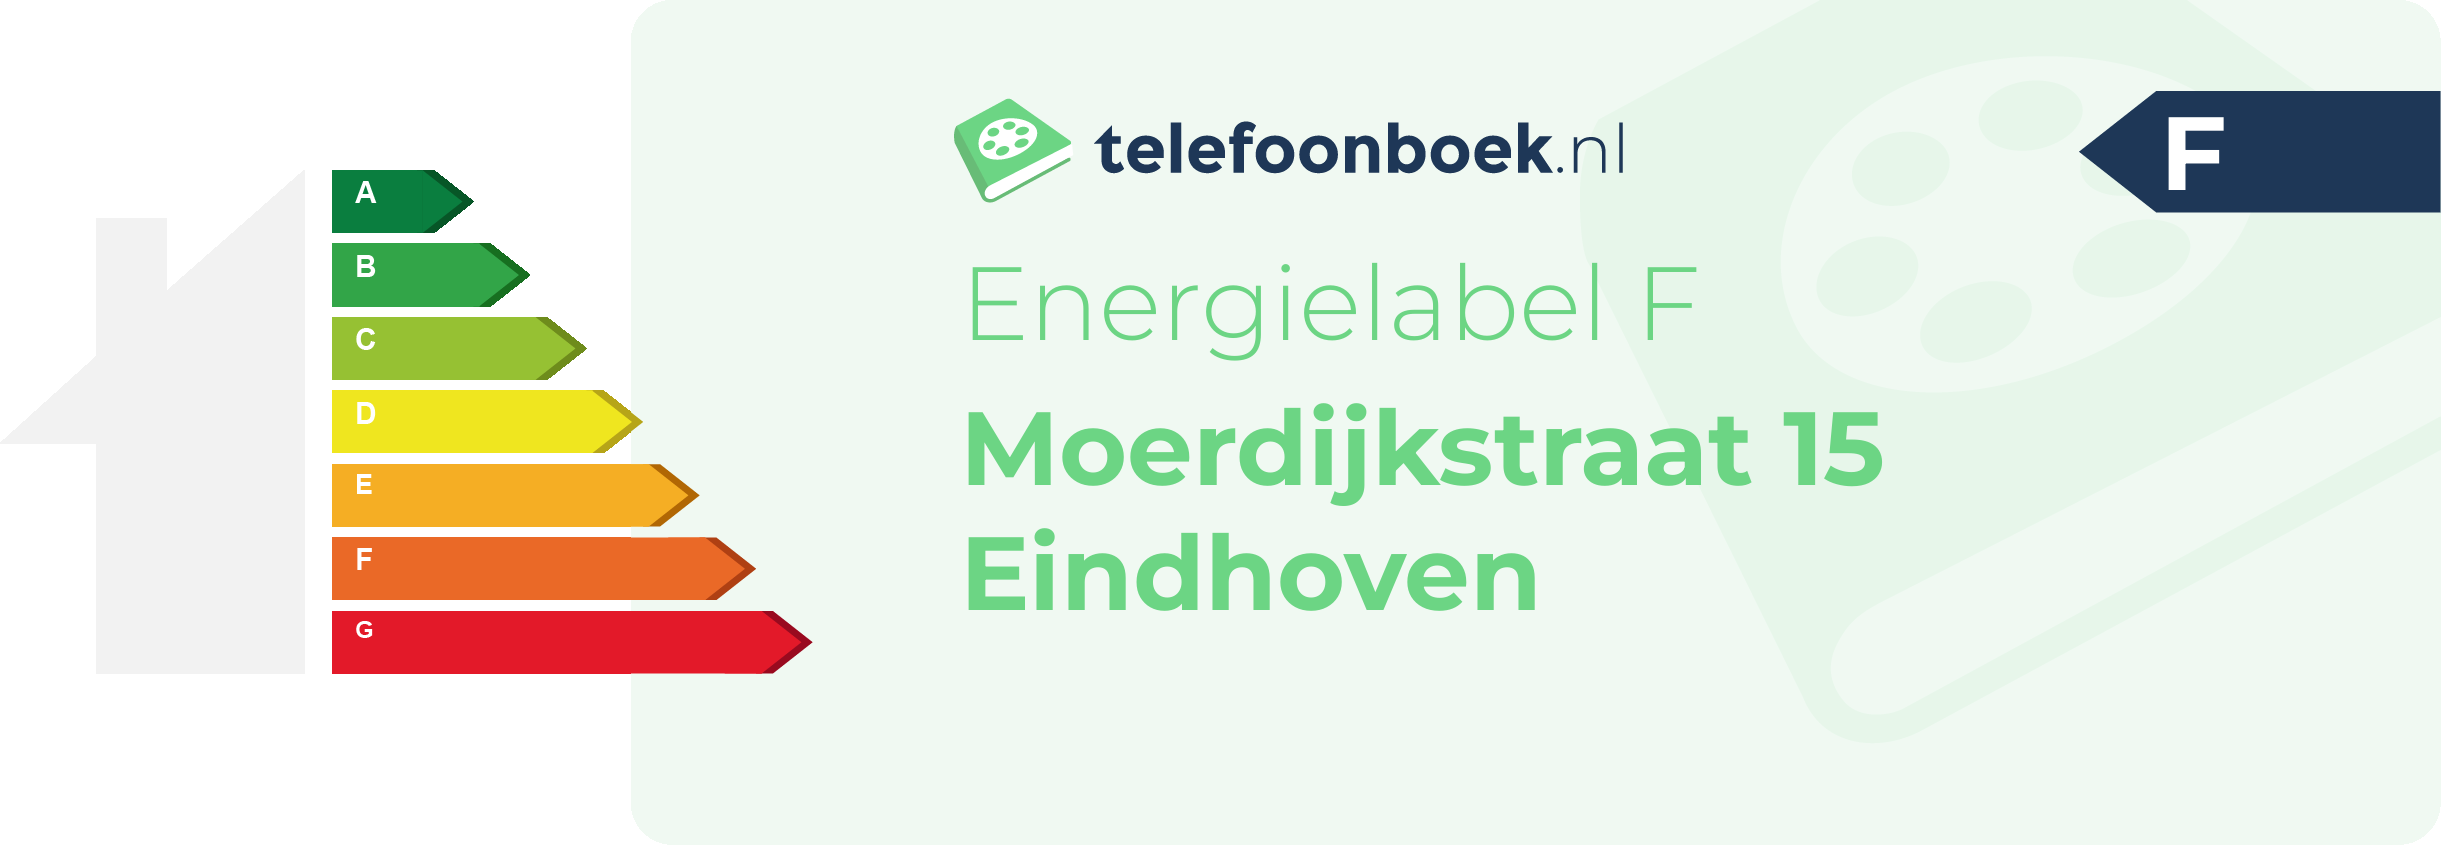 Energielabel Moerdijkstraat 15 Eindhoven